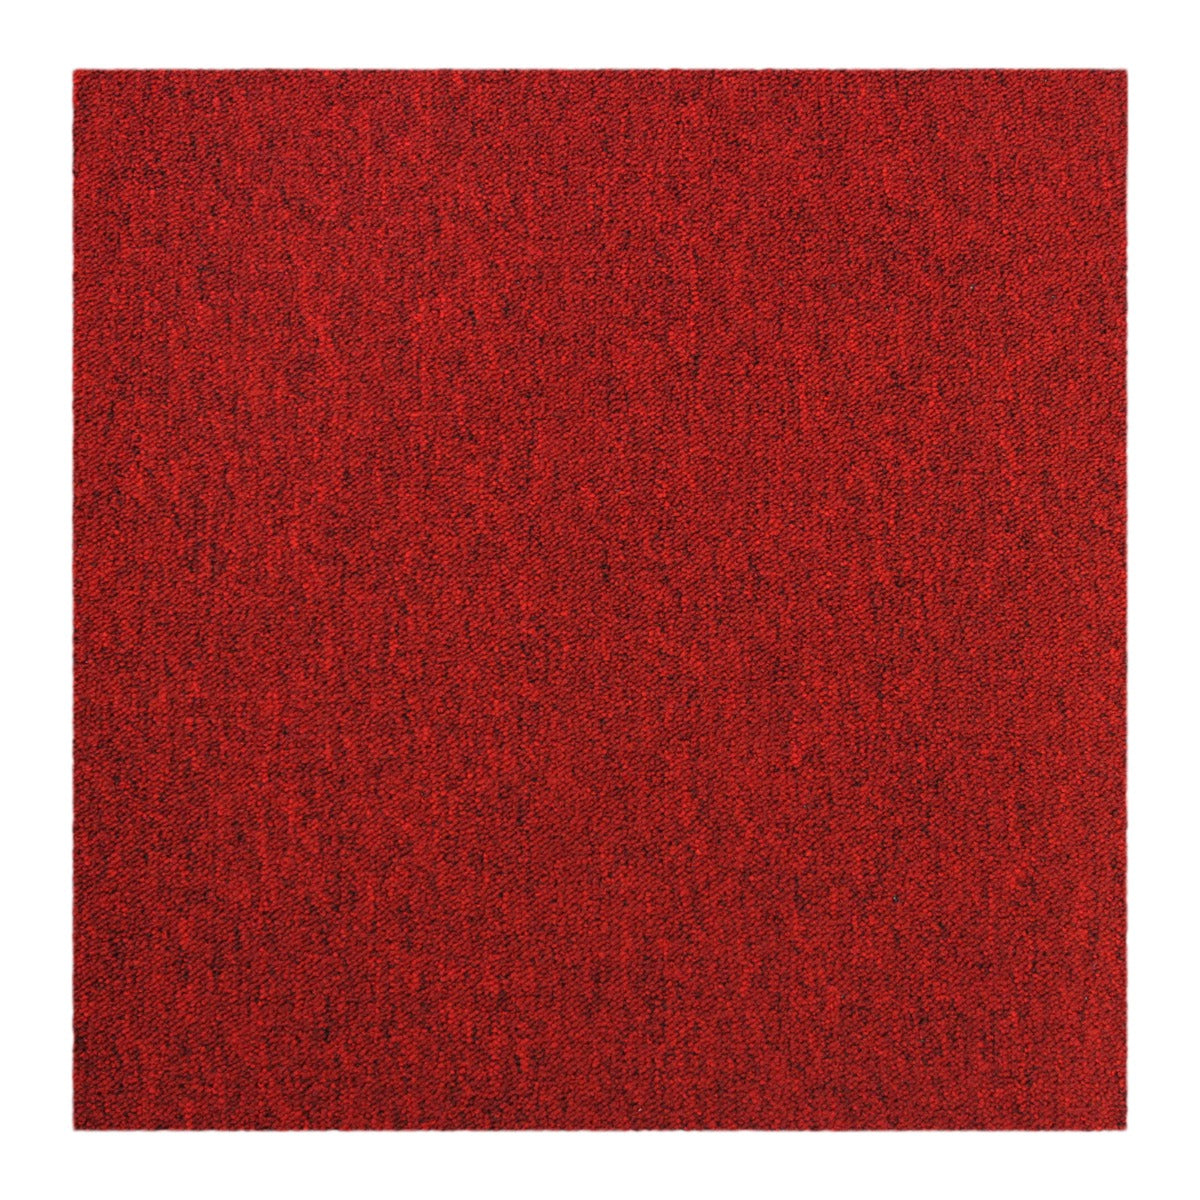 40 x Piastrelle di Moquette Rosso Scarlatto 10m2